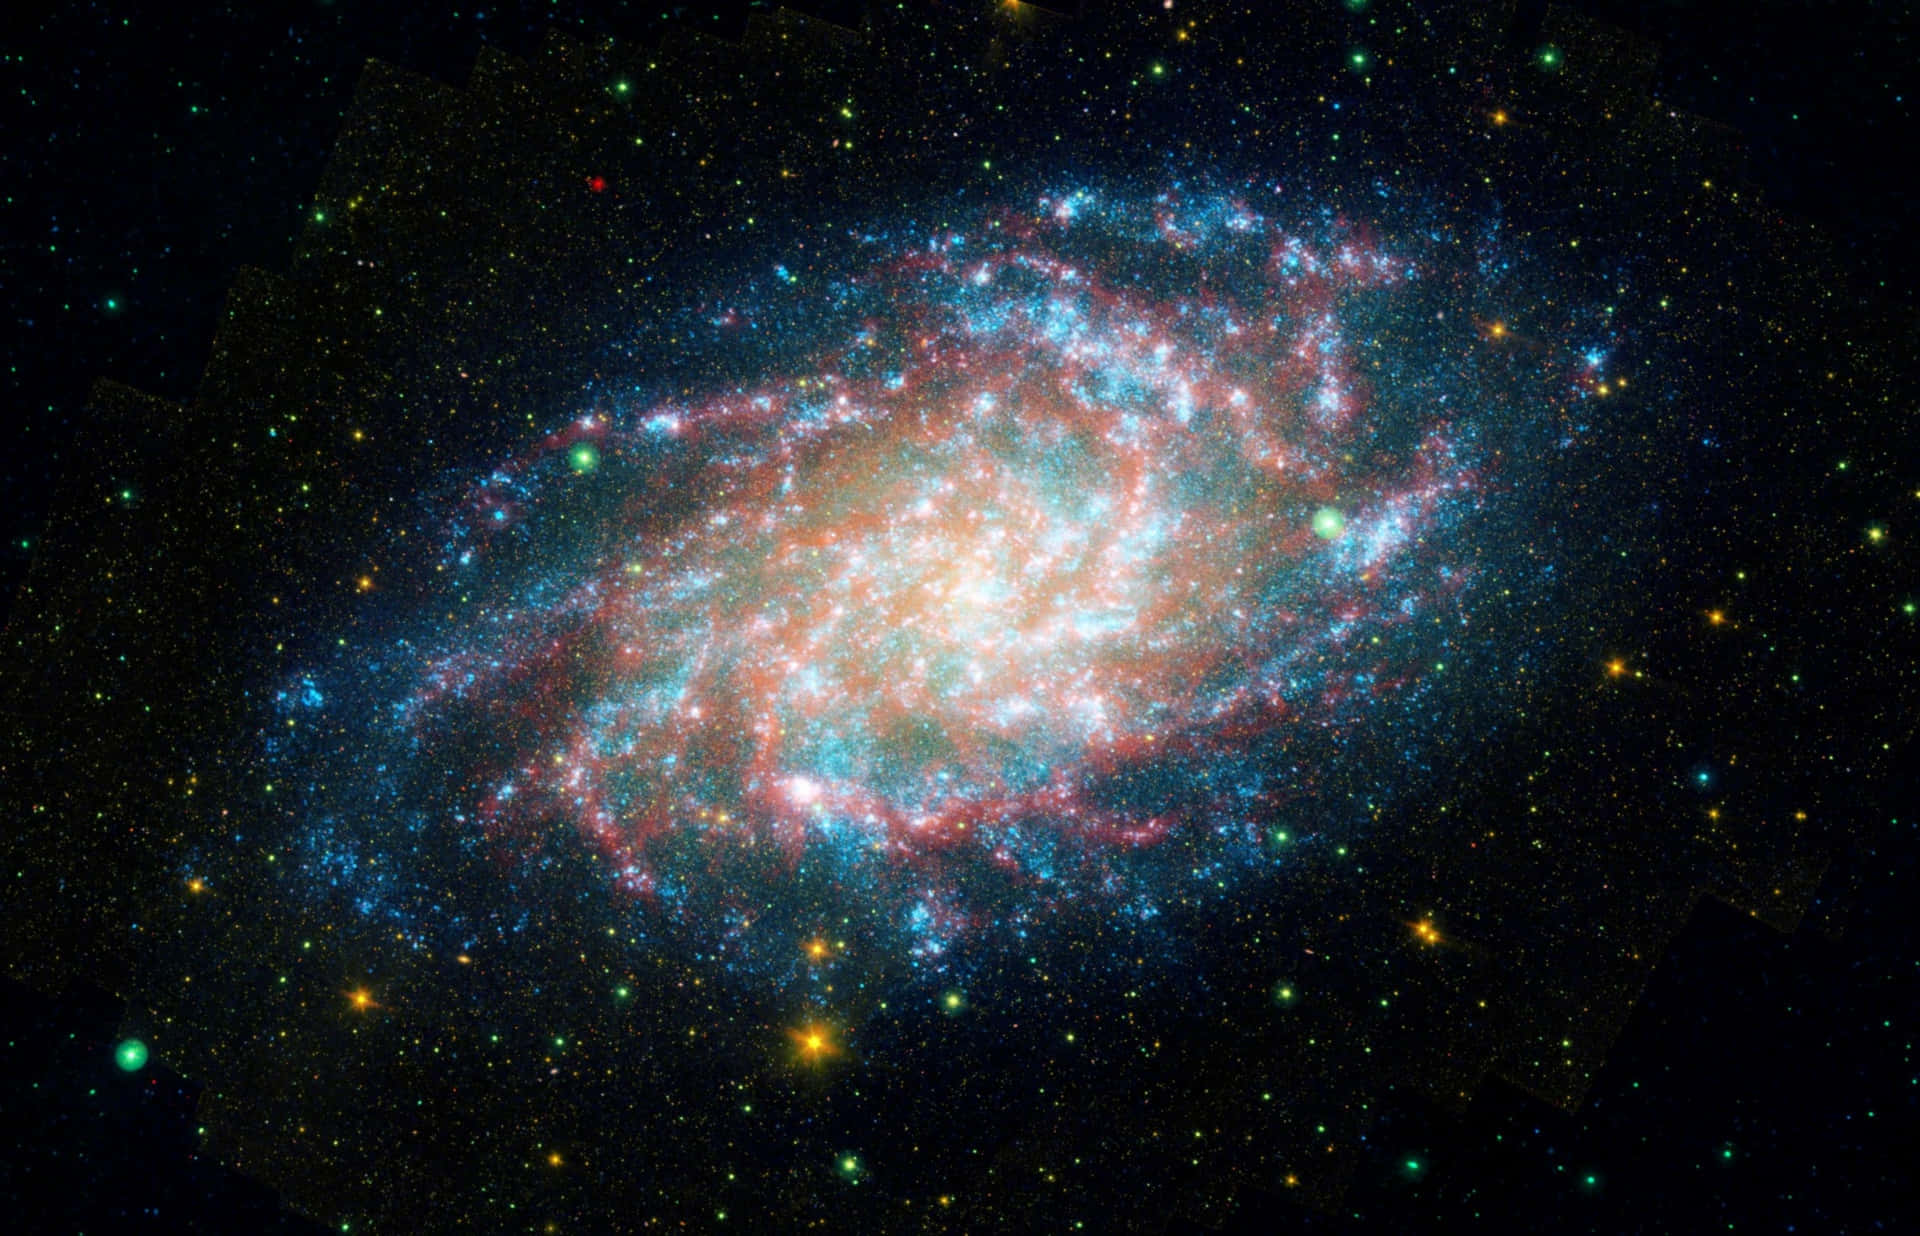 Embarqueem Uma Jornada Pelas Estrelas Com Esta Imagem Da Galáxia Da Nasa De Outro Mundo.